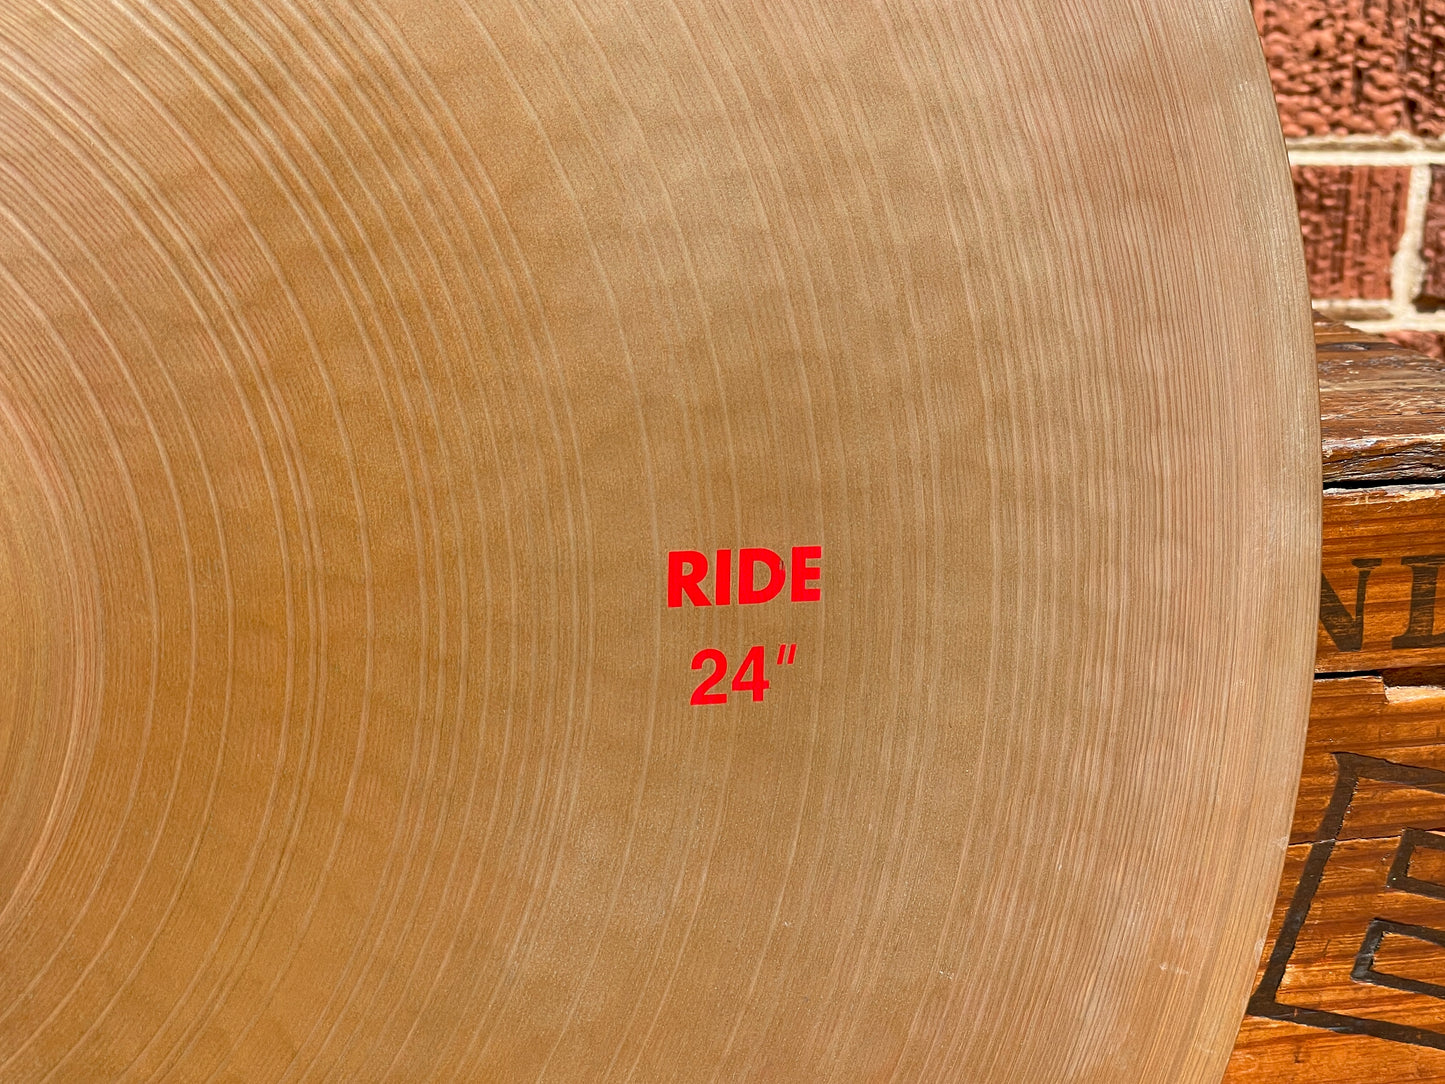 24" Paiste 2002 Ride Cymbal 3918g